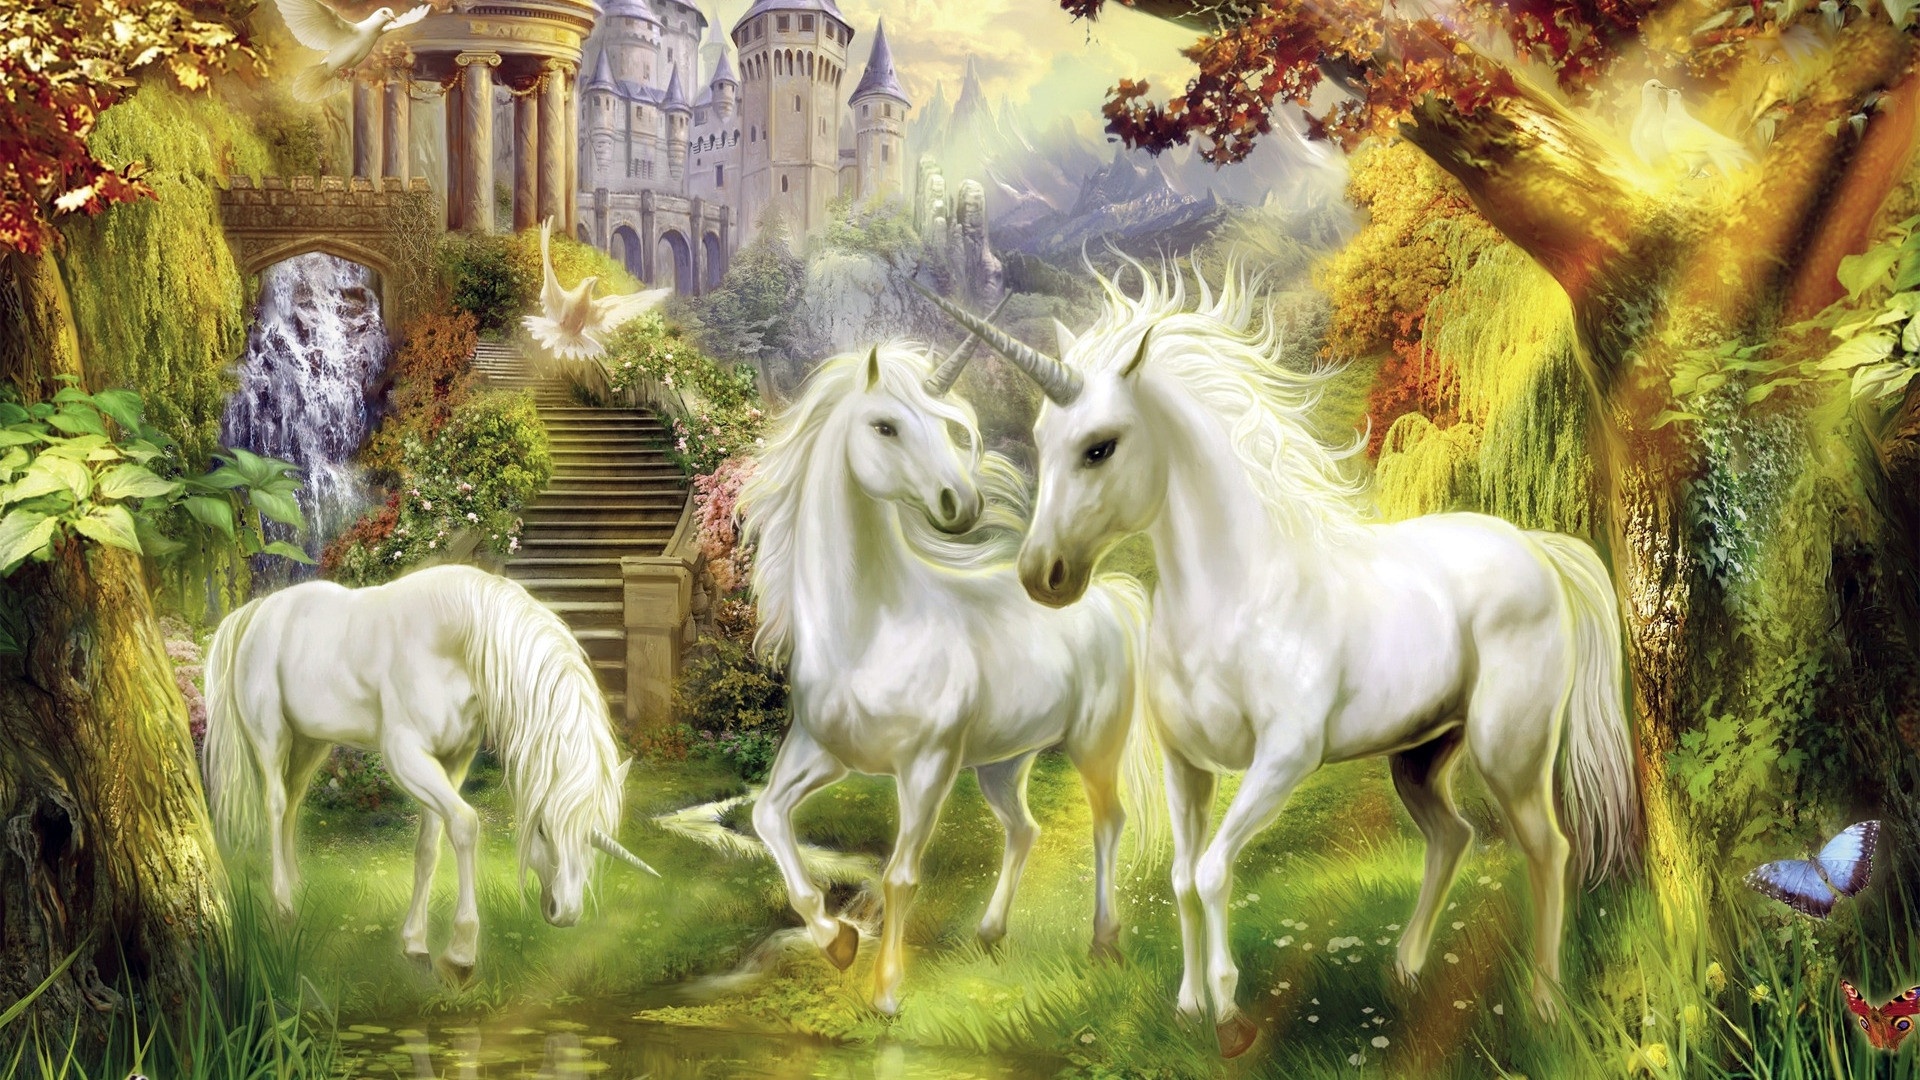 Magic Horses wallpaper for desktop